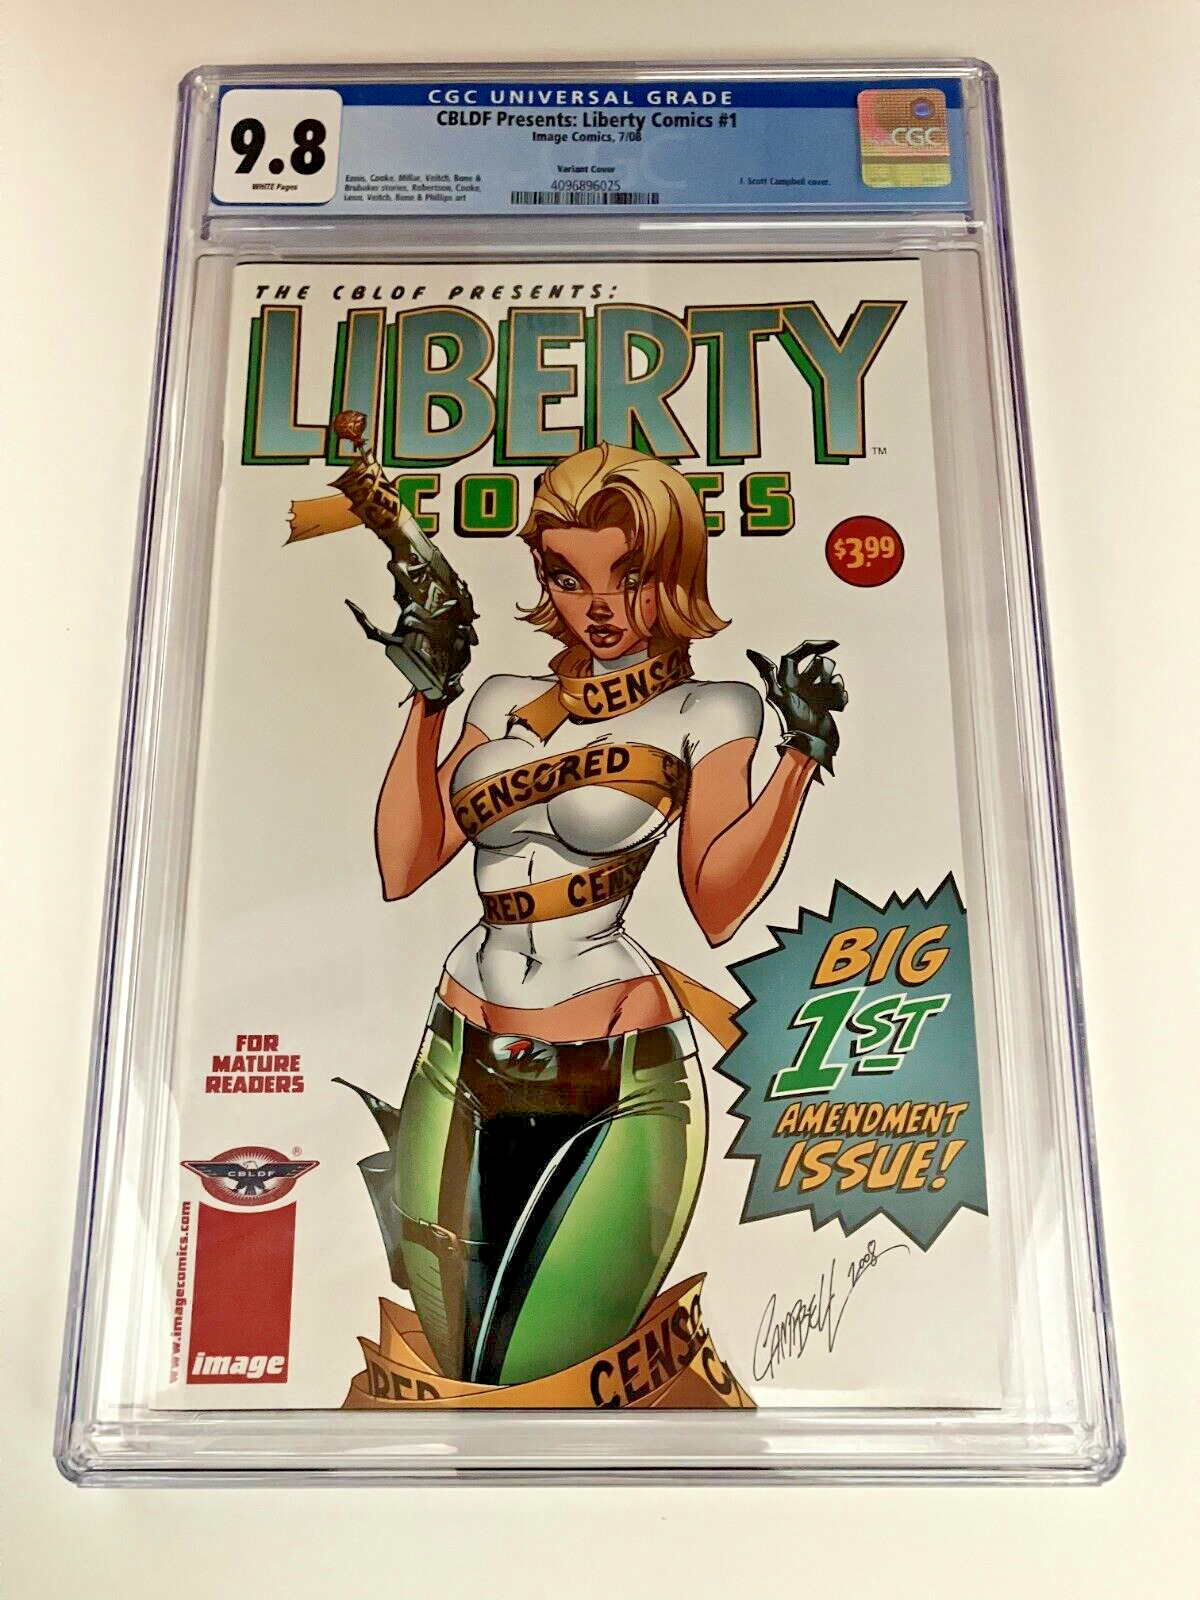 CBLDF Presents Liberty Comics #1 - CGC 9.8 - J. Scott Campbell Cover